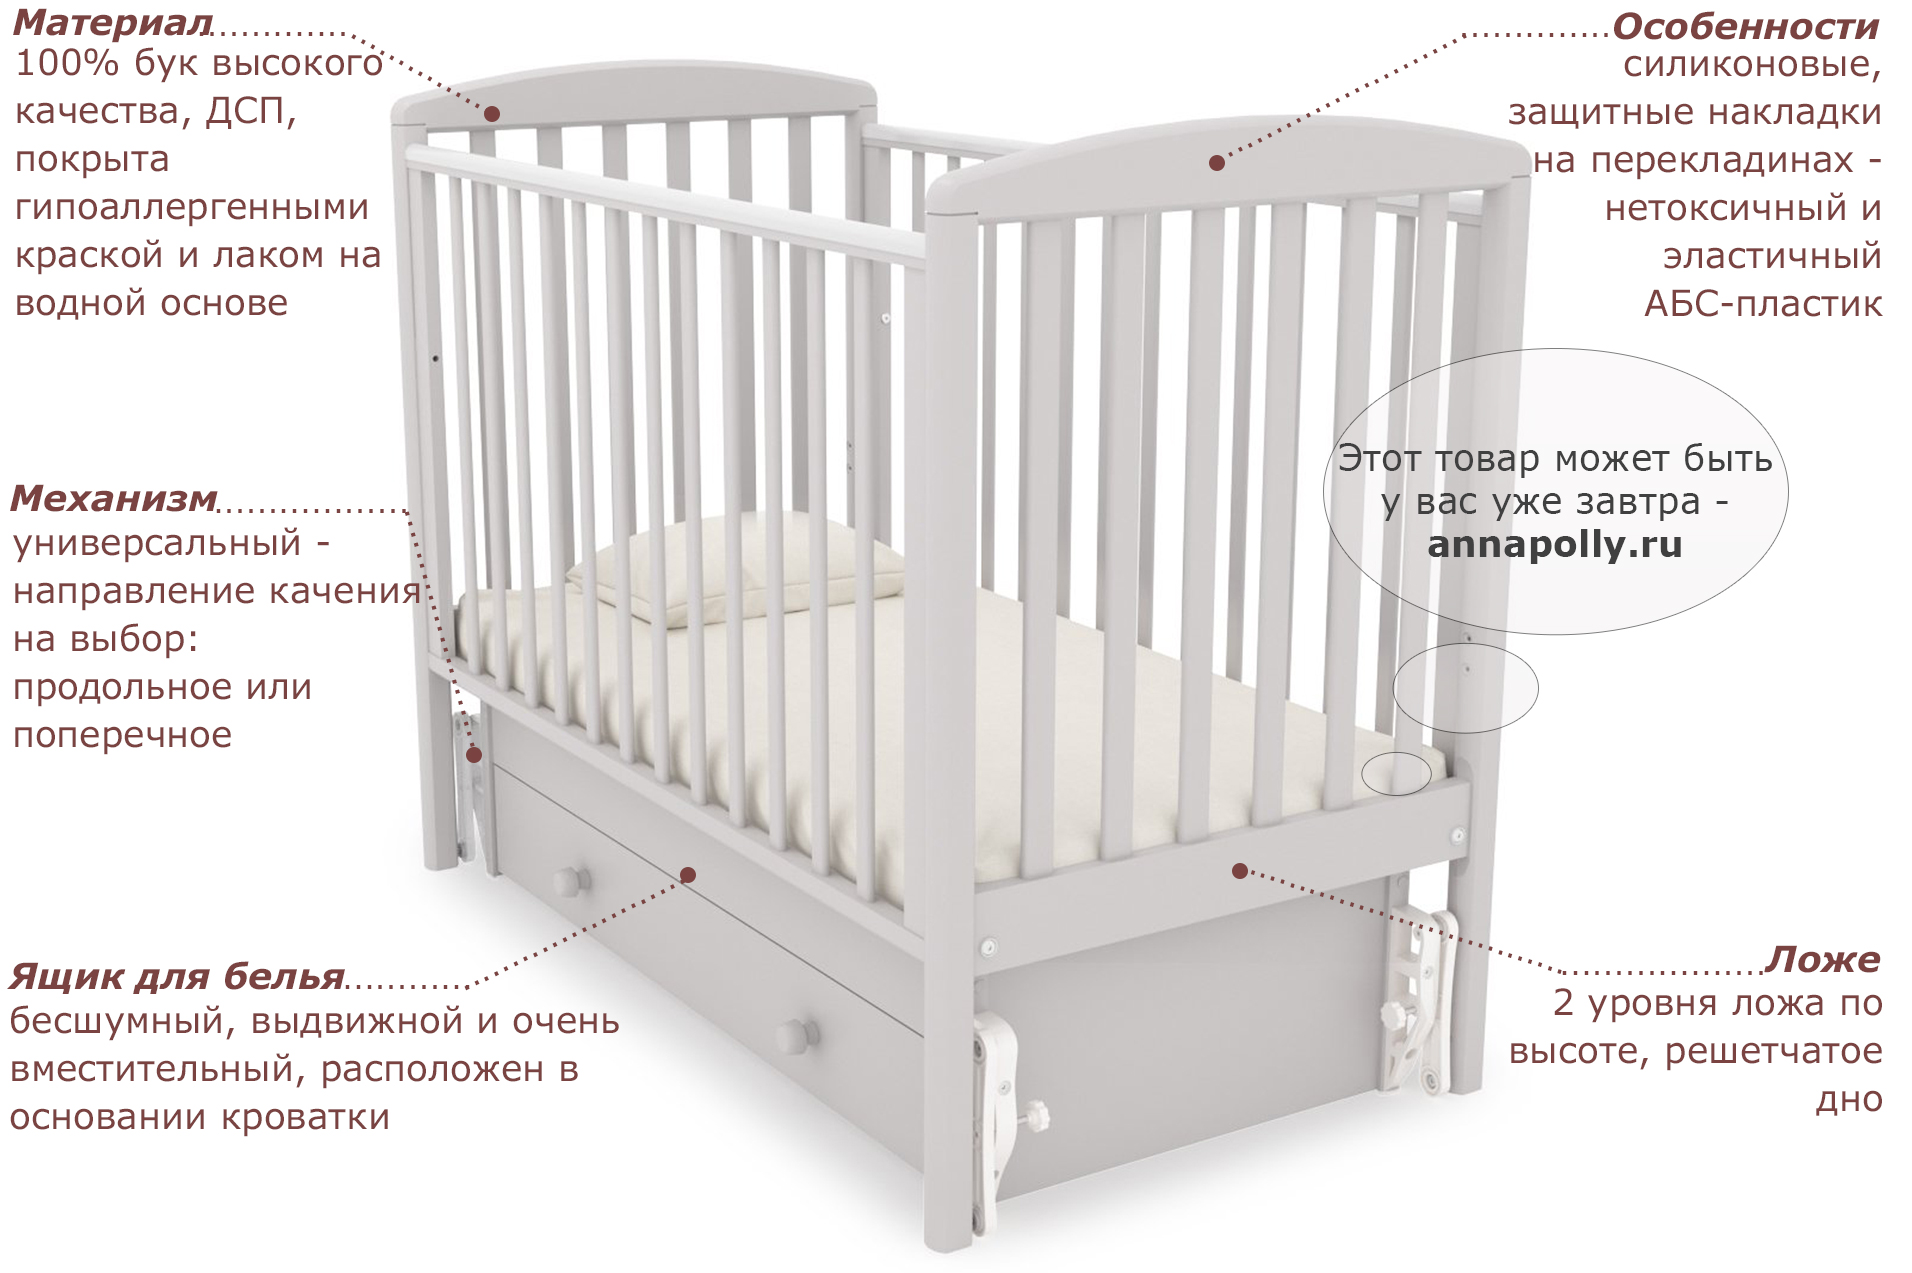 Обзор детских кроваток для новорожденных - плюсы и минусы